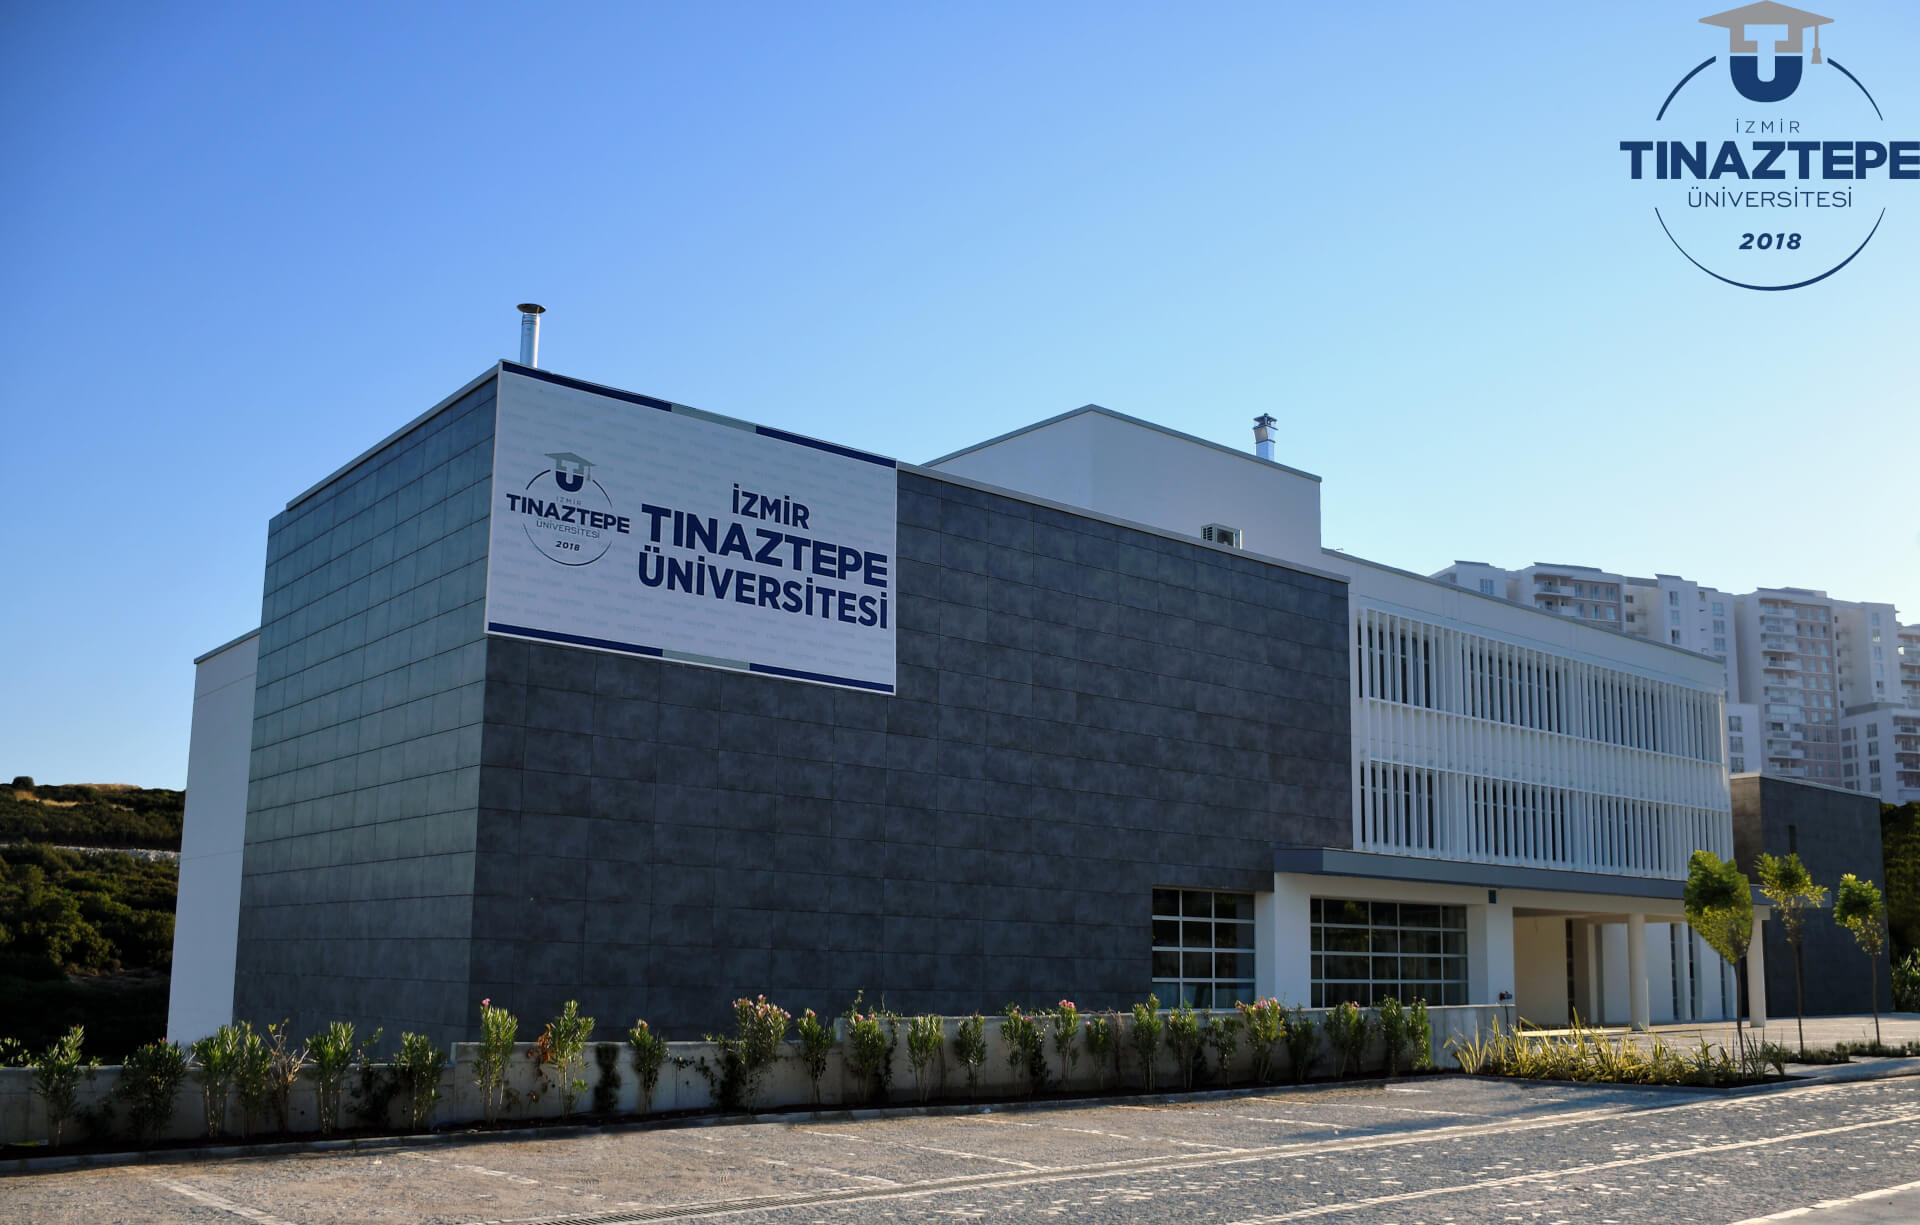 izmitinaz universitesi find and study 2 - Université d'Izmir Tınaztepe